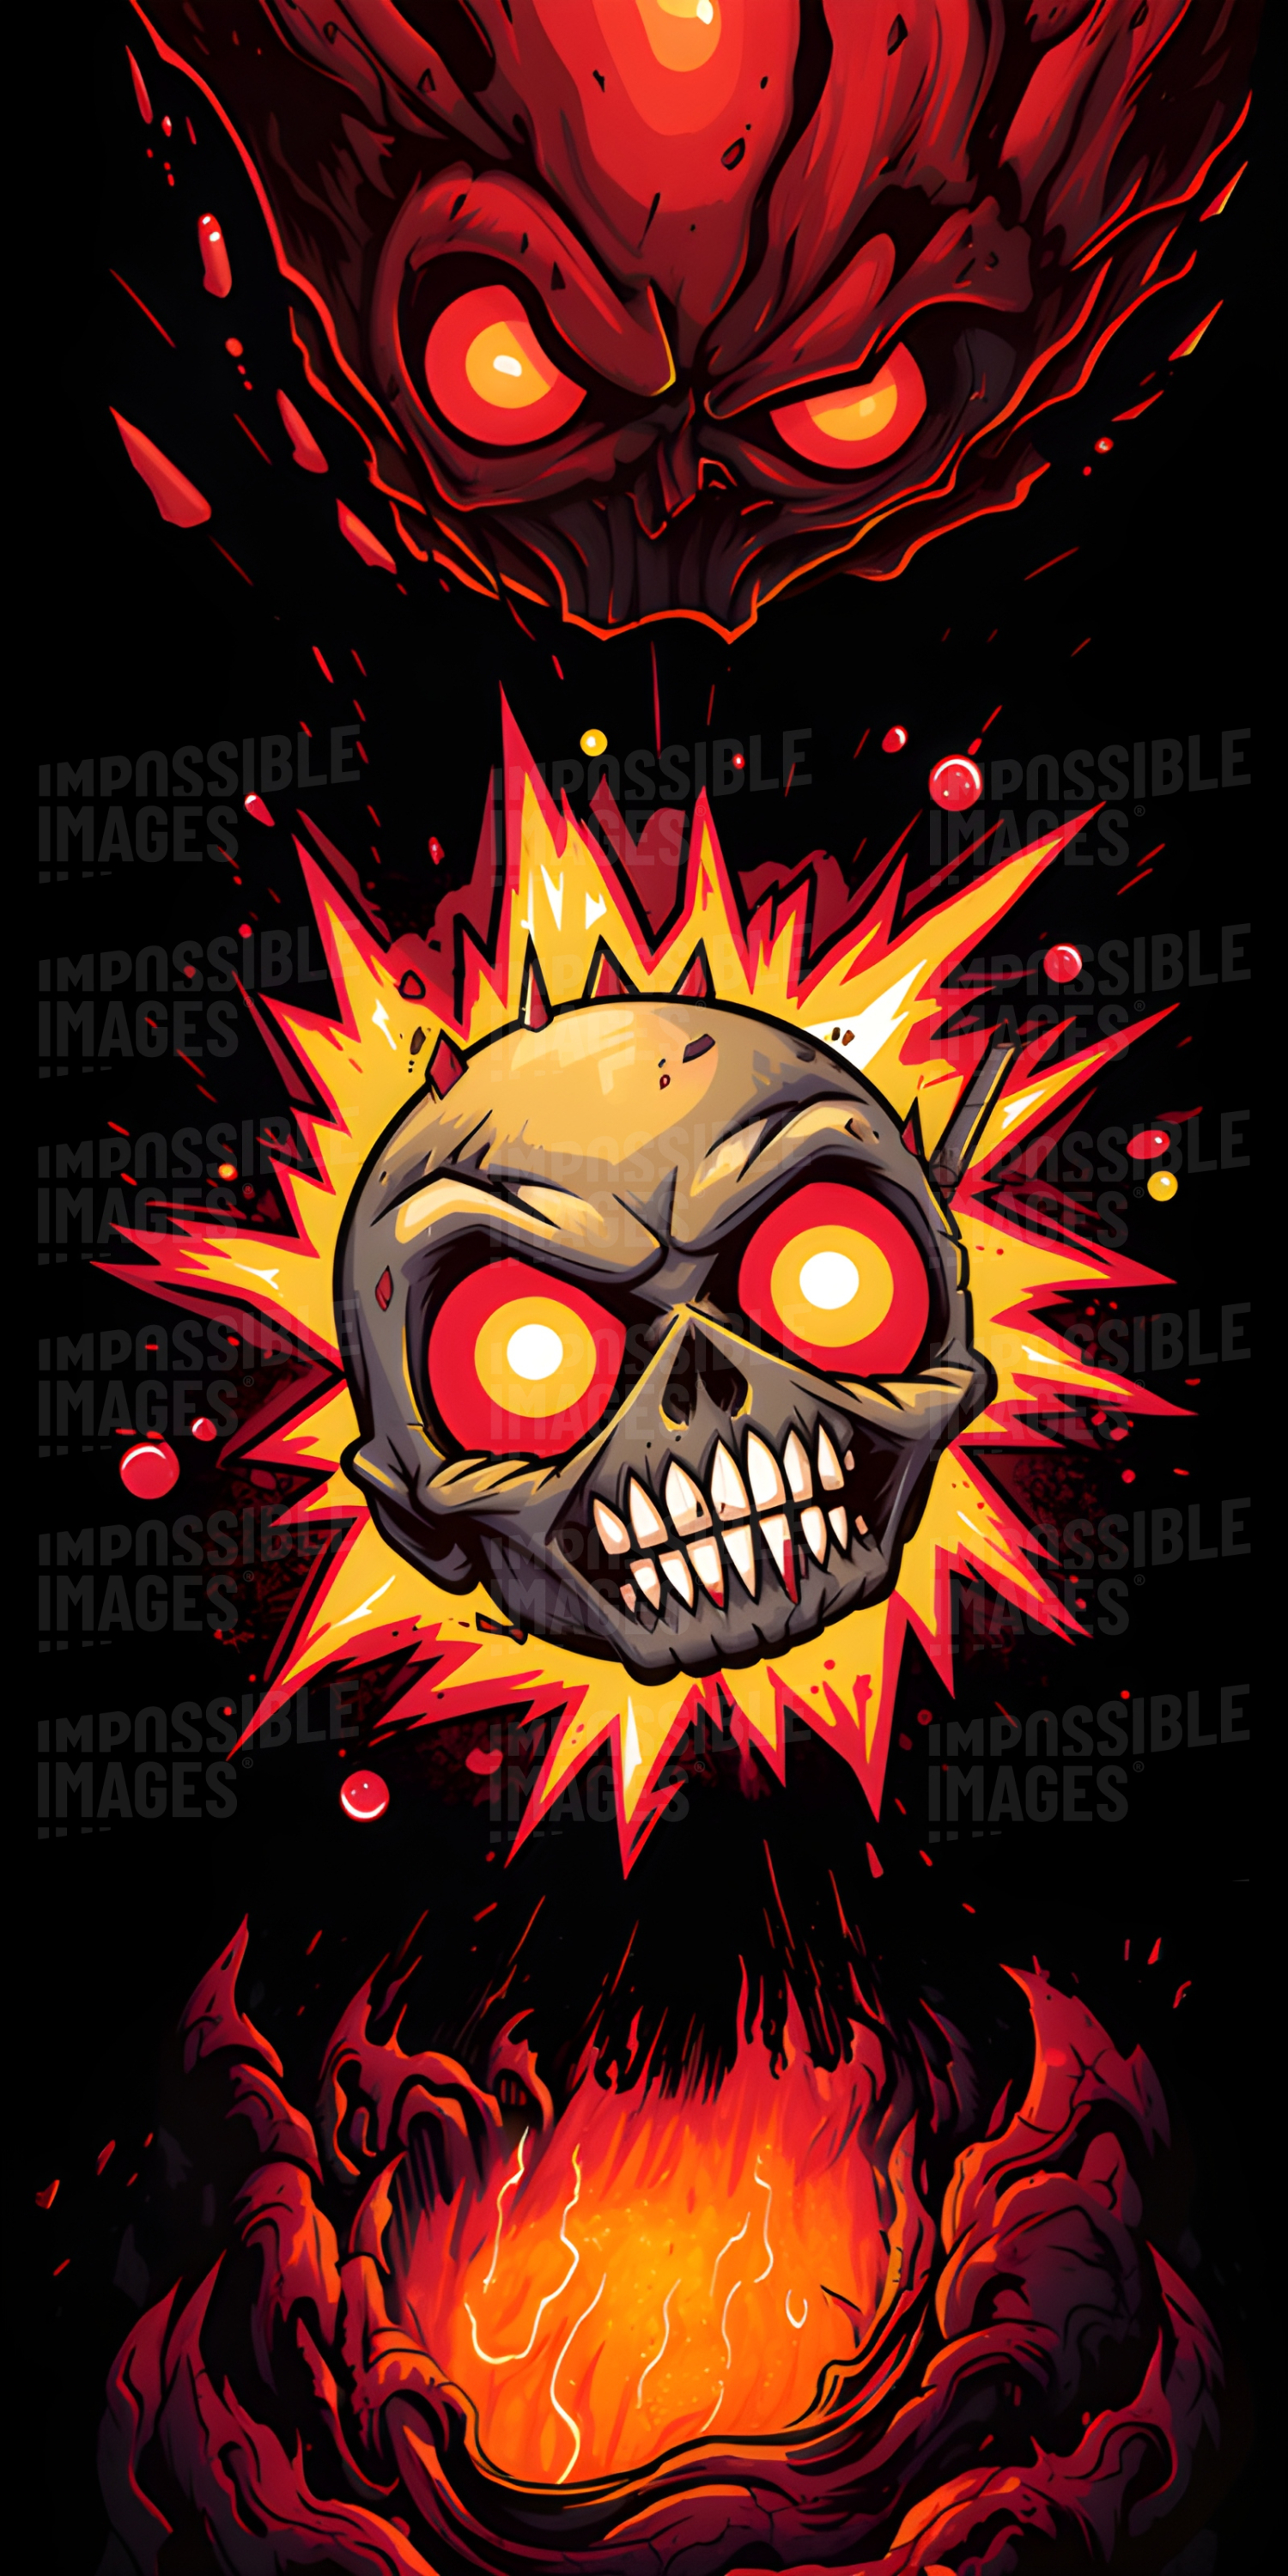 Skull fireball illustration (phone wallpaper background) - 